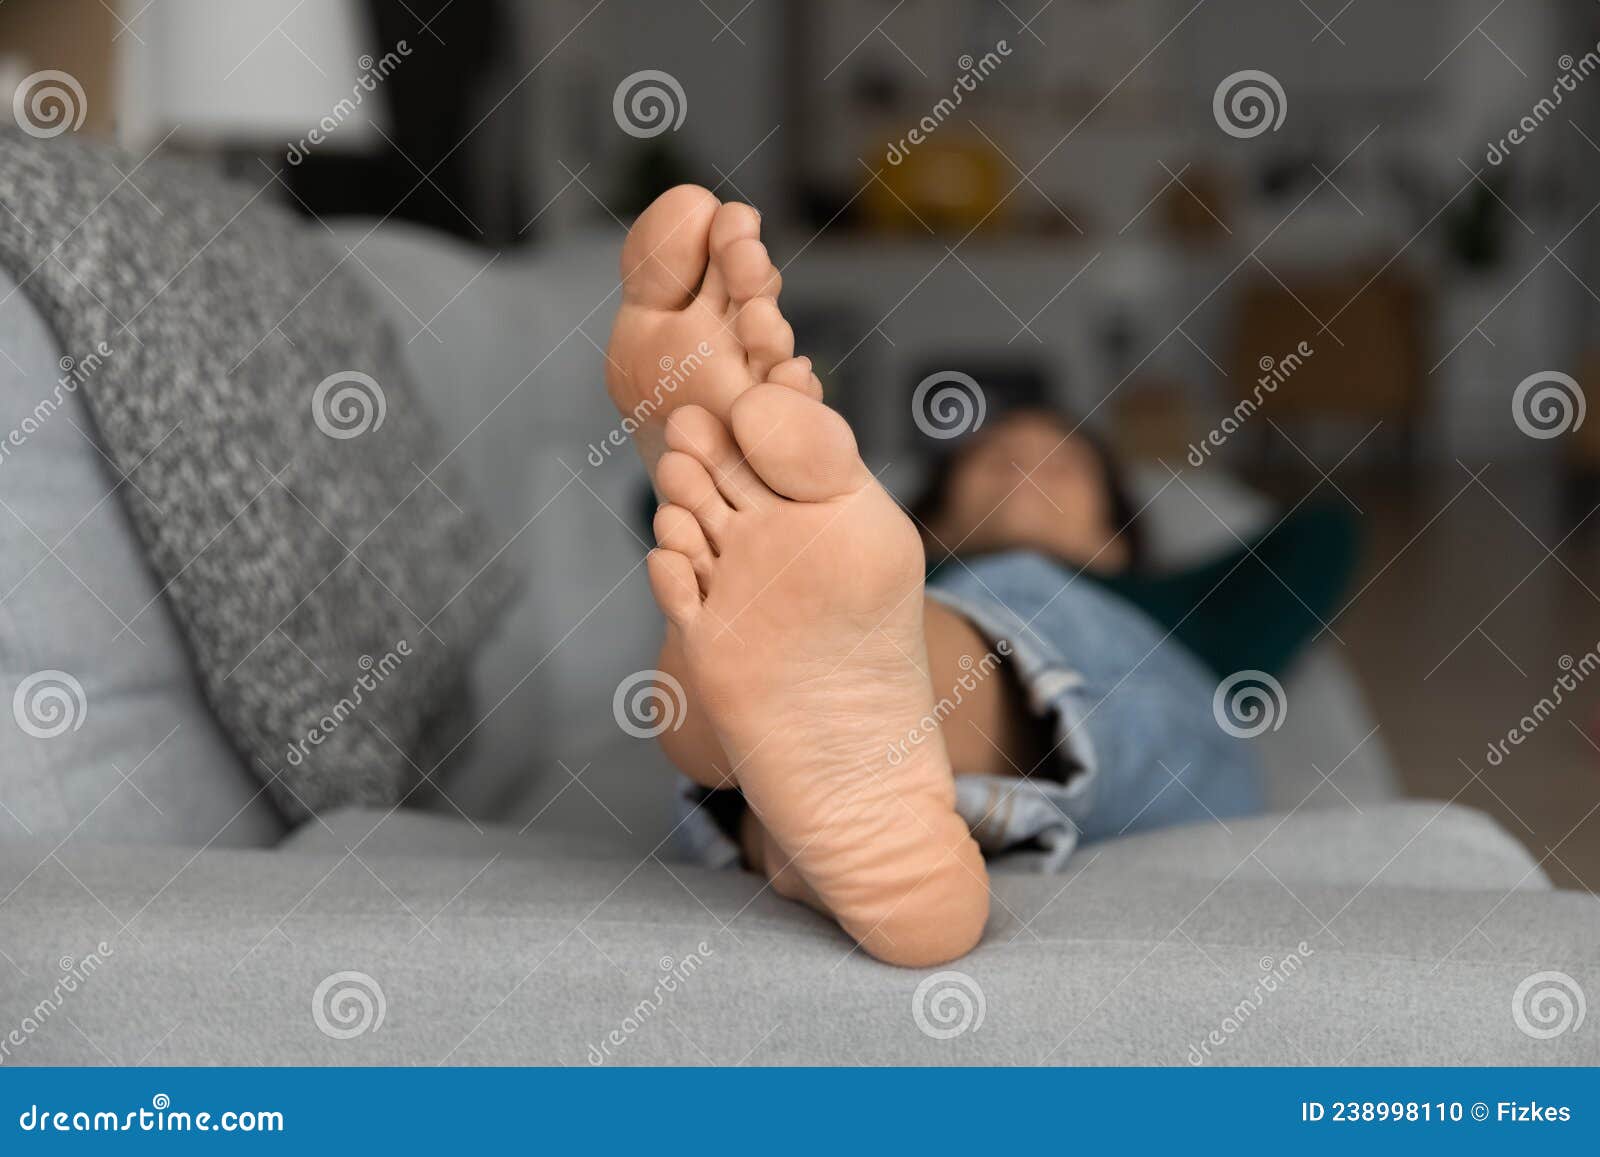 床上女人腿部特写裁剪视图的妇女躺在白色床上与凸起的腿图片下载 - 觅知网